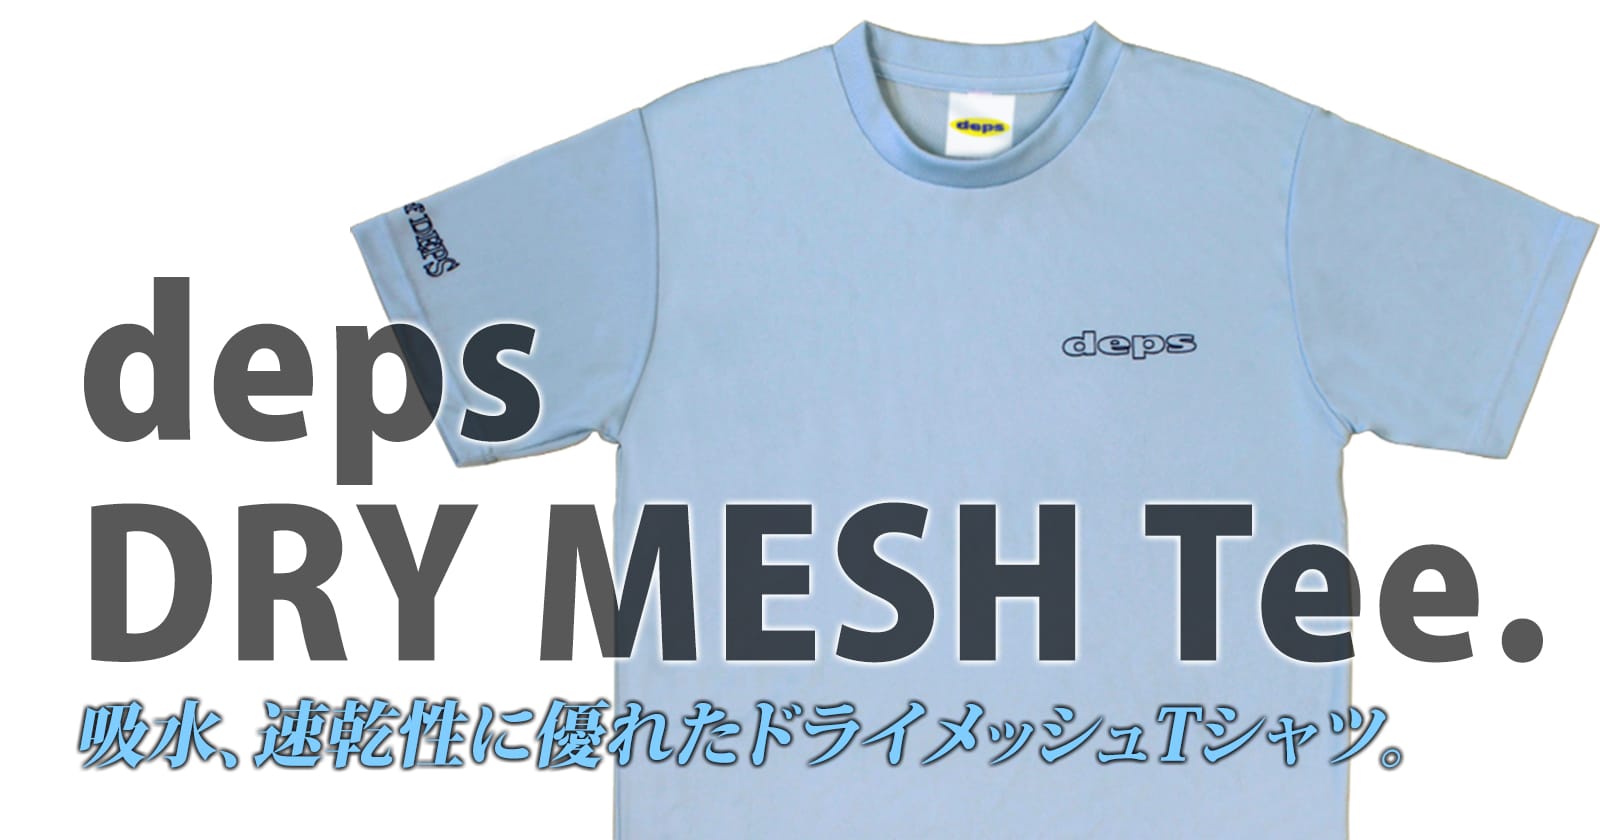 1350円 魅力的な価格 デプス ハーフメッシュTシャツ